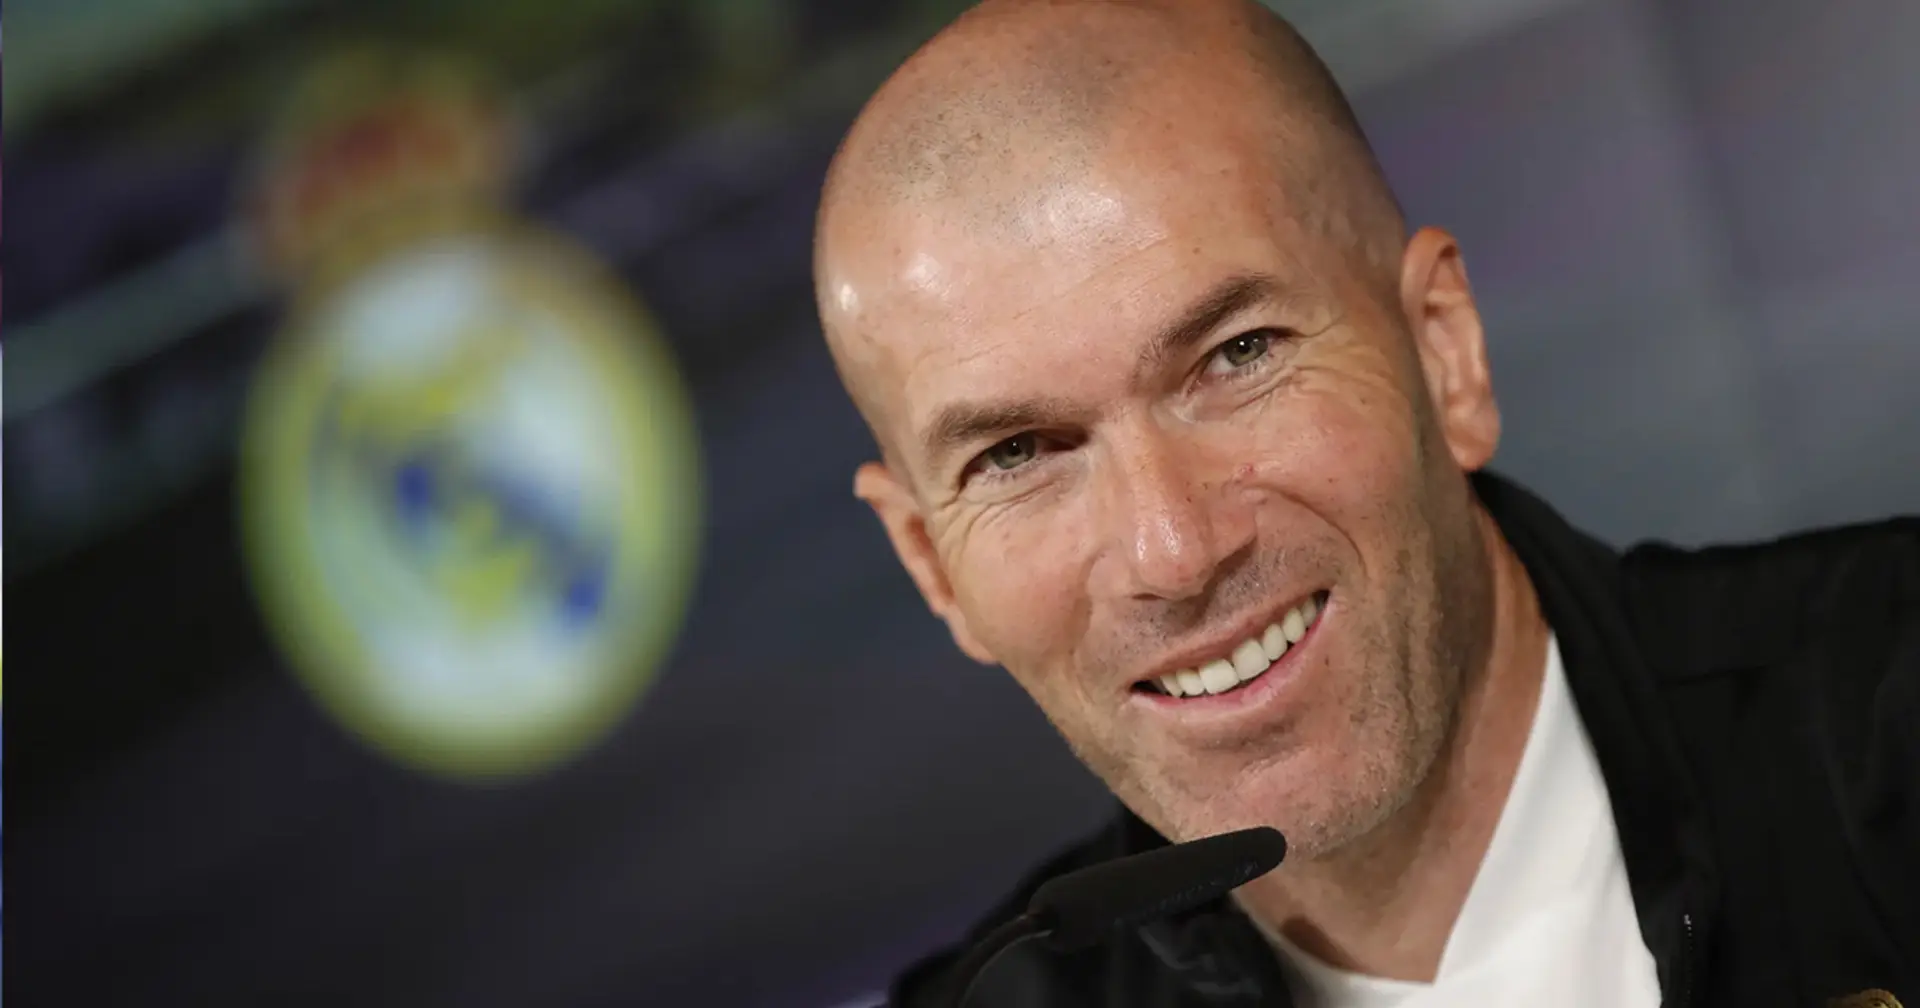 OFICIAL: Zidane incorpora a última hora a cuatro jugadores del Castilla